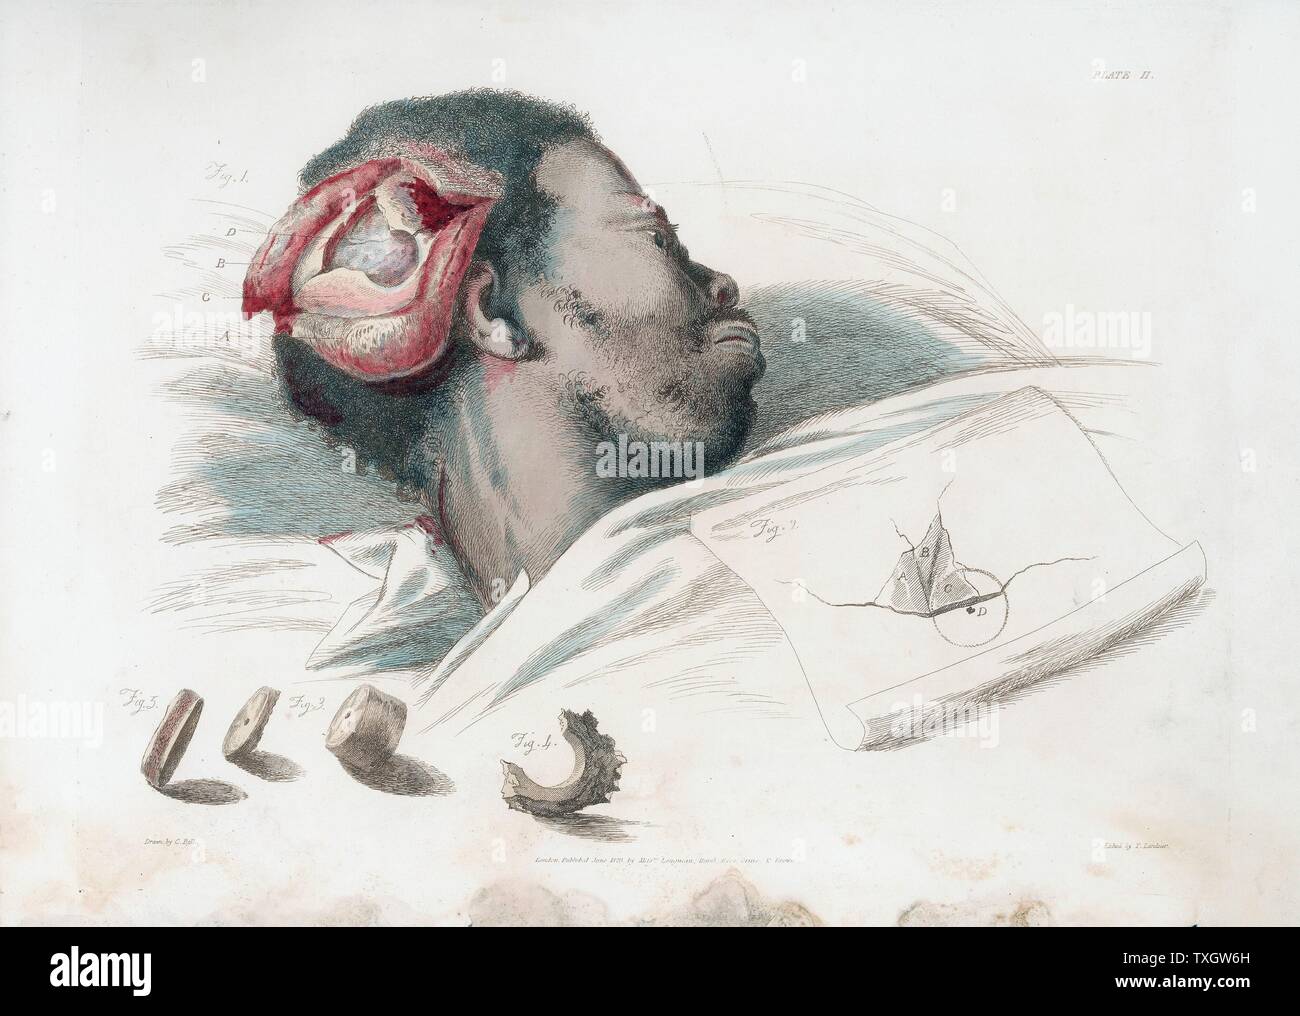 Vue sur blessure dans le crâne après trephination et l'enlèvement des os brisés, montré en bas à gauche de Charles Bell 'Les grandes opérations de chirurgie' 1821 Gravure par Thomas Bell après Landseer Londres Banque D'Images